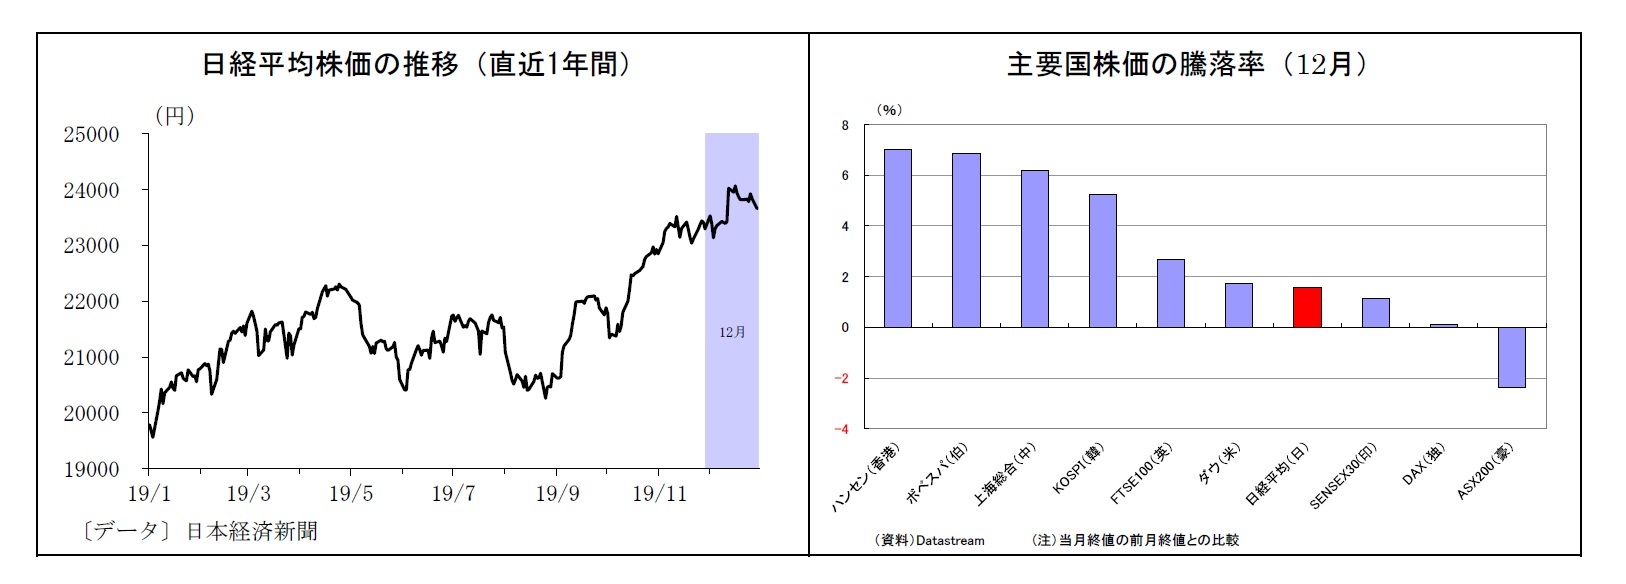 日経平均株価の推移（直近1年間）/主要国株価の騰落率（12月）